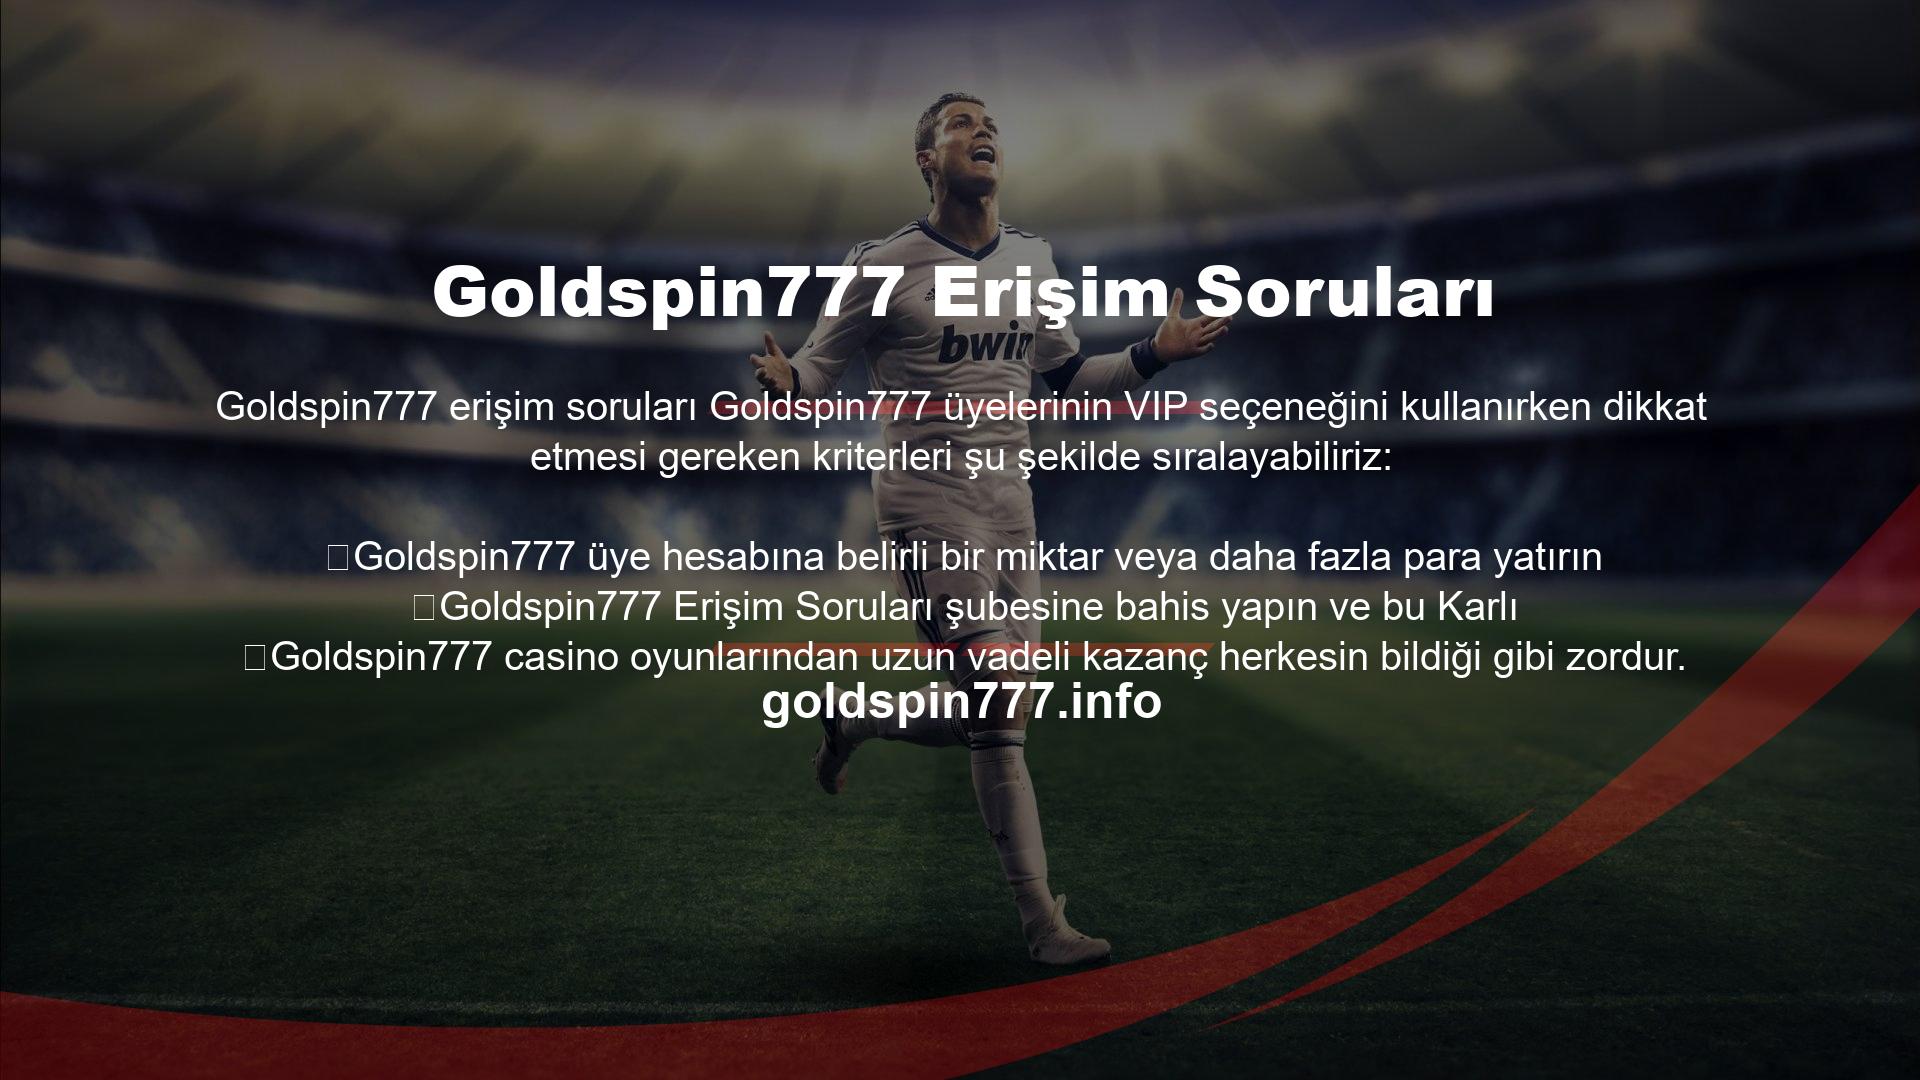 Goldspin777 Sportsbook'un avantajları nelerdir Goldspin777, spor bahisleri alanında çok çeşitli promosyonlar ve etkinlikler sunar